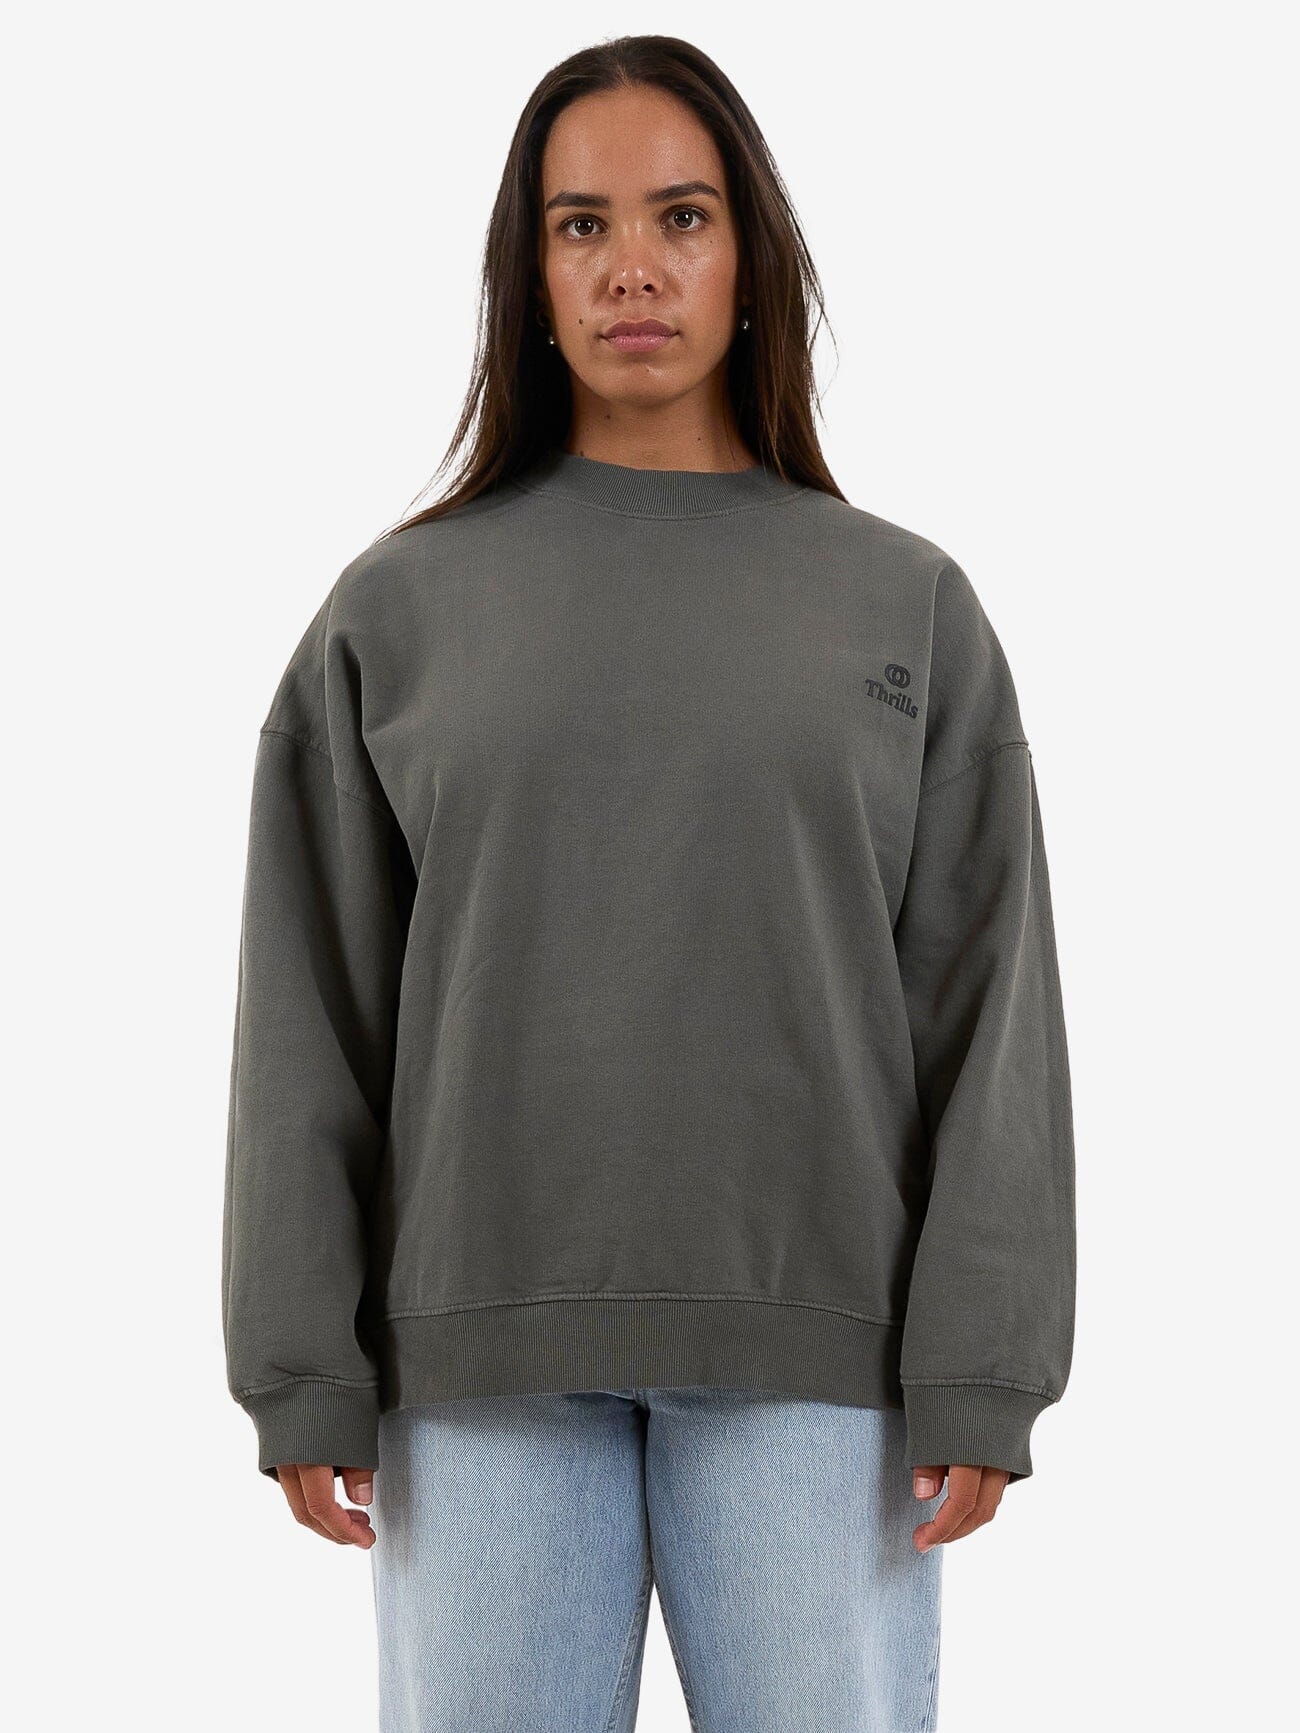 Womens Sweaters & Fleece